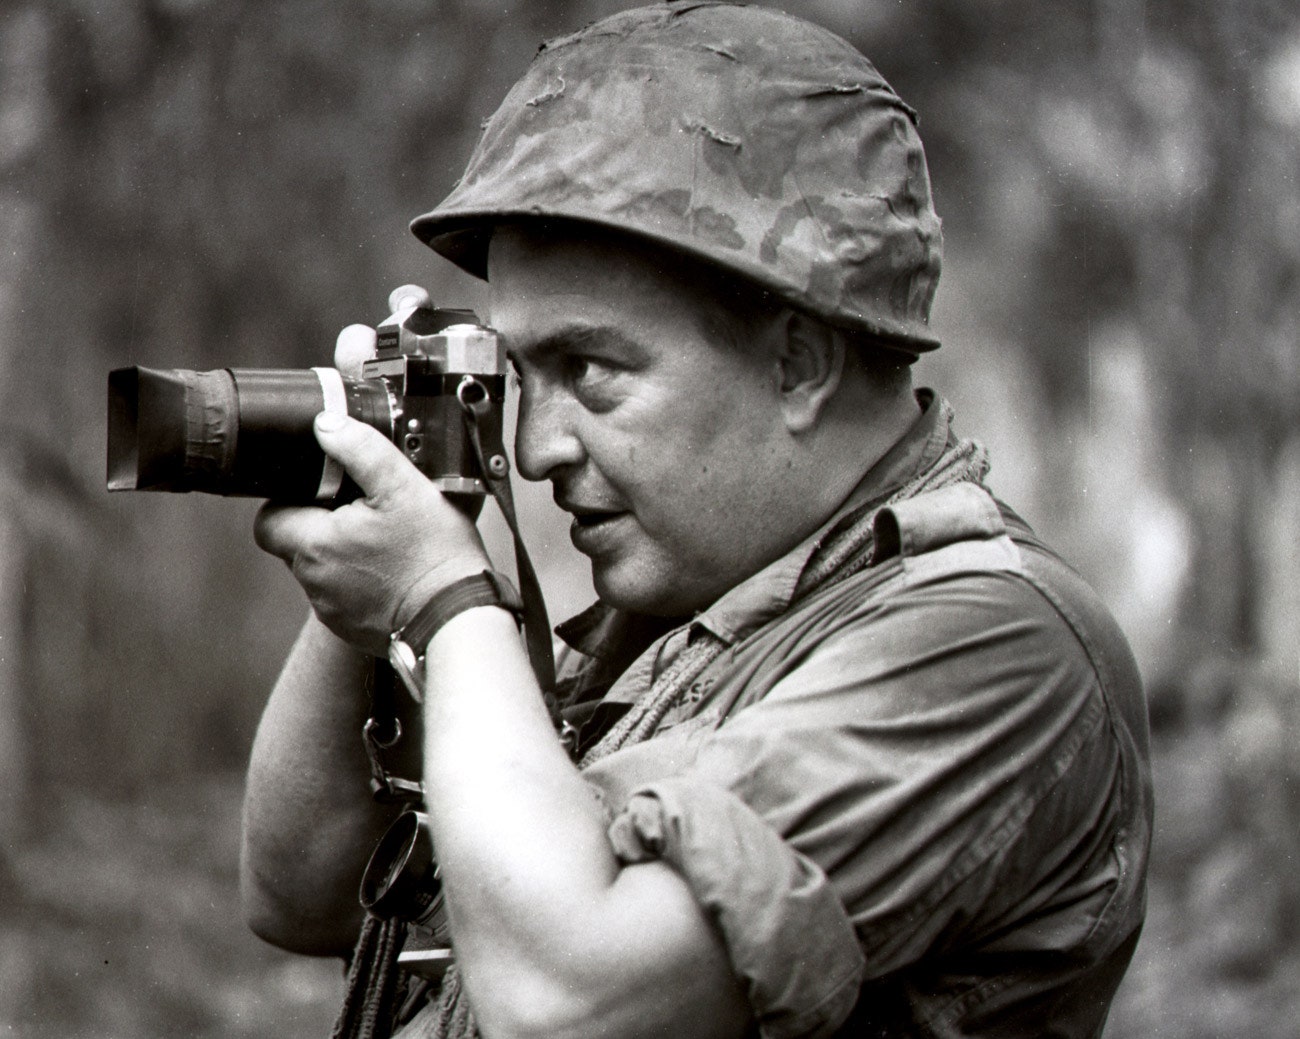 LEICA Barnack Berek Blog: HORST FAAS : THE DEAN OF VIETNAM WAR PHOTOGRAPHERS